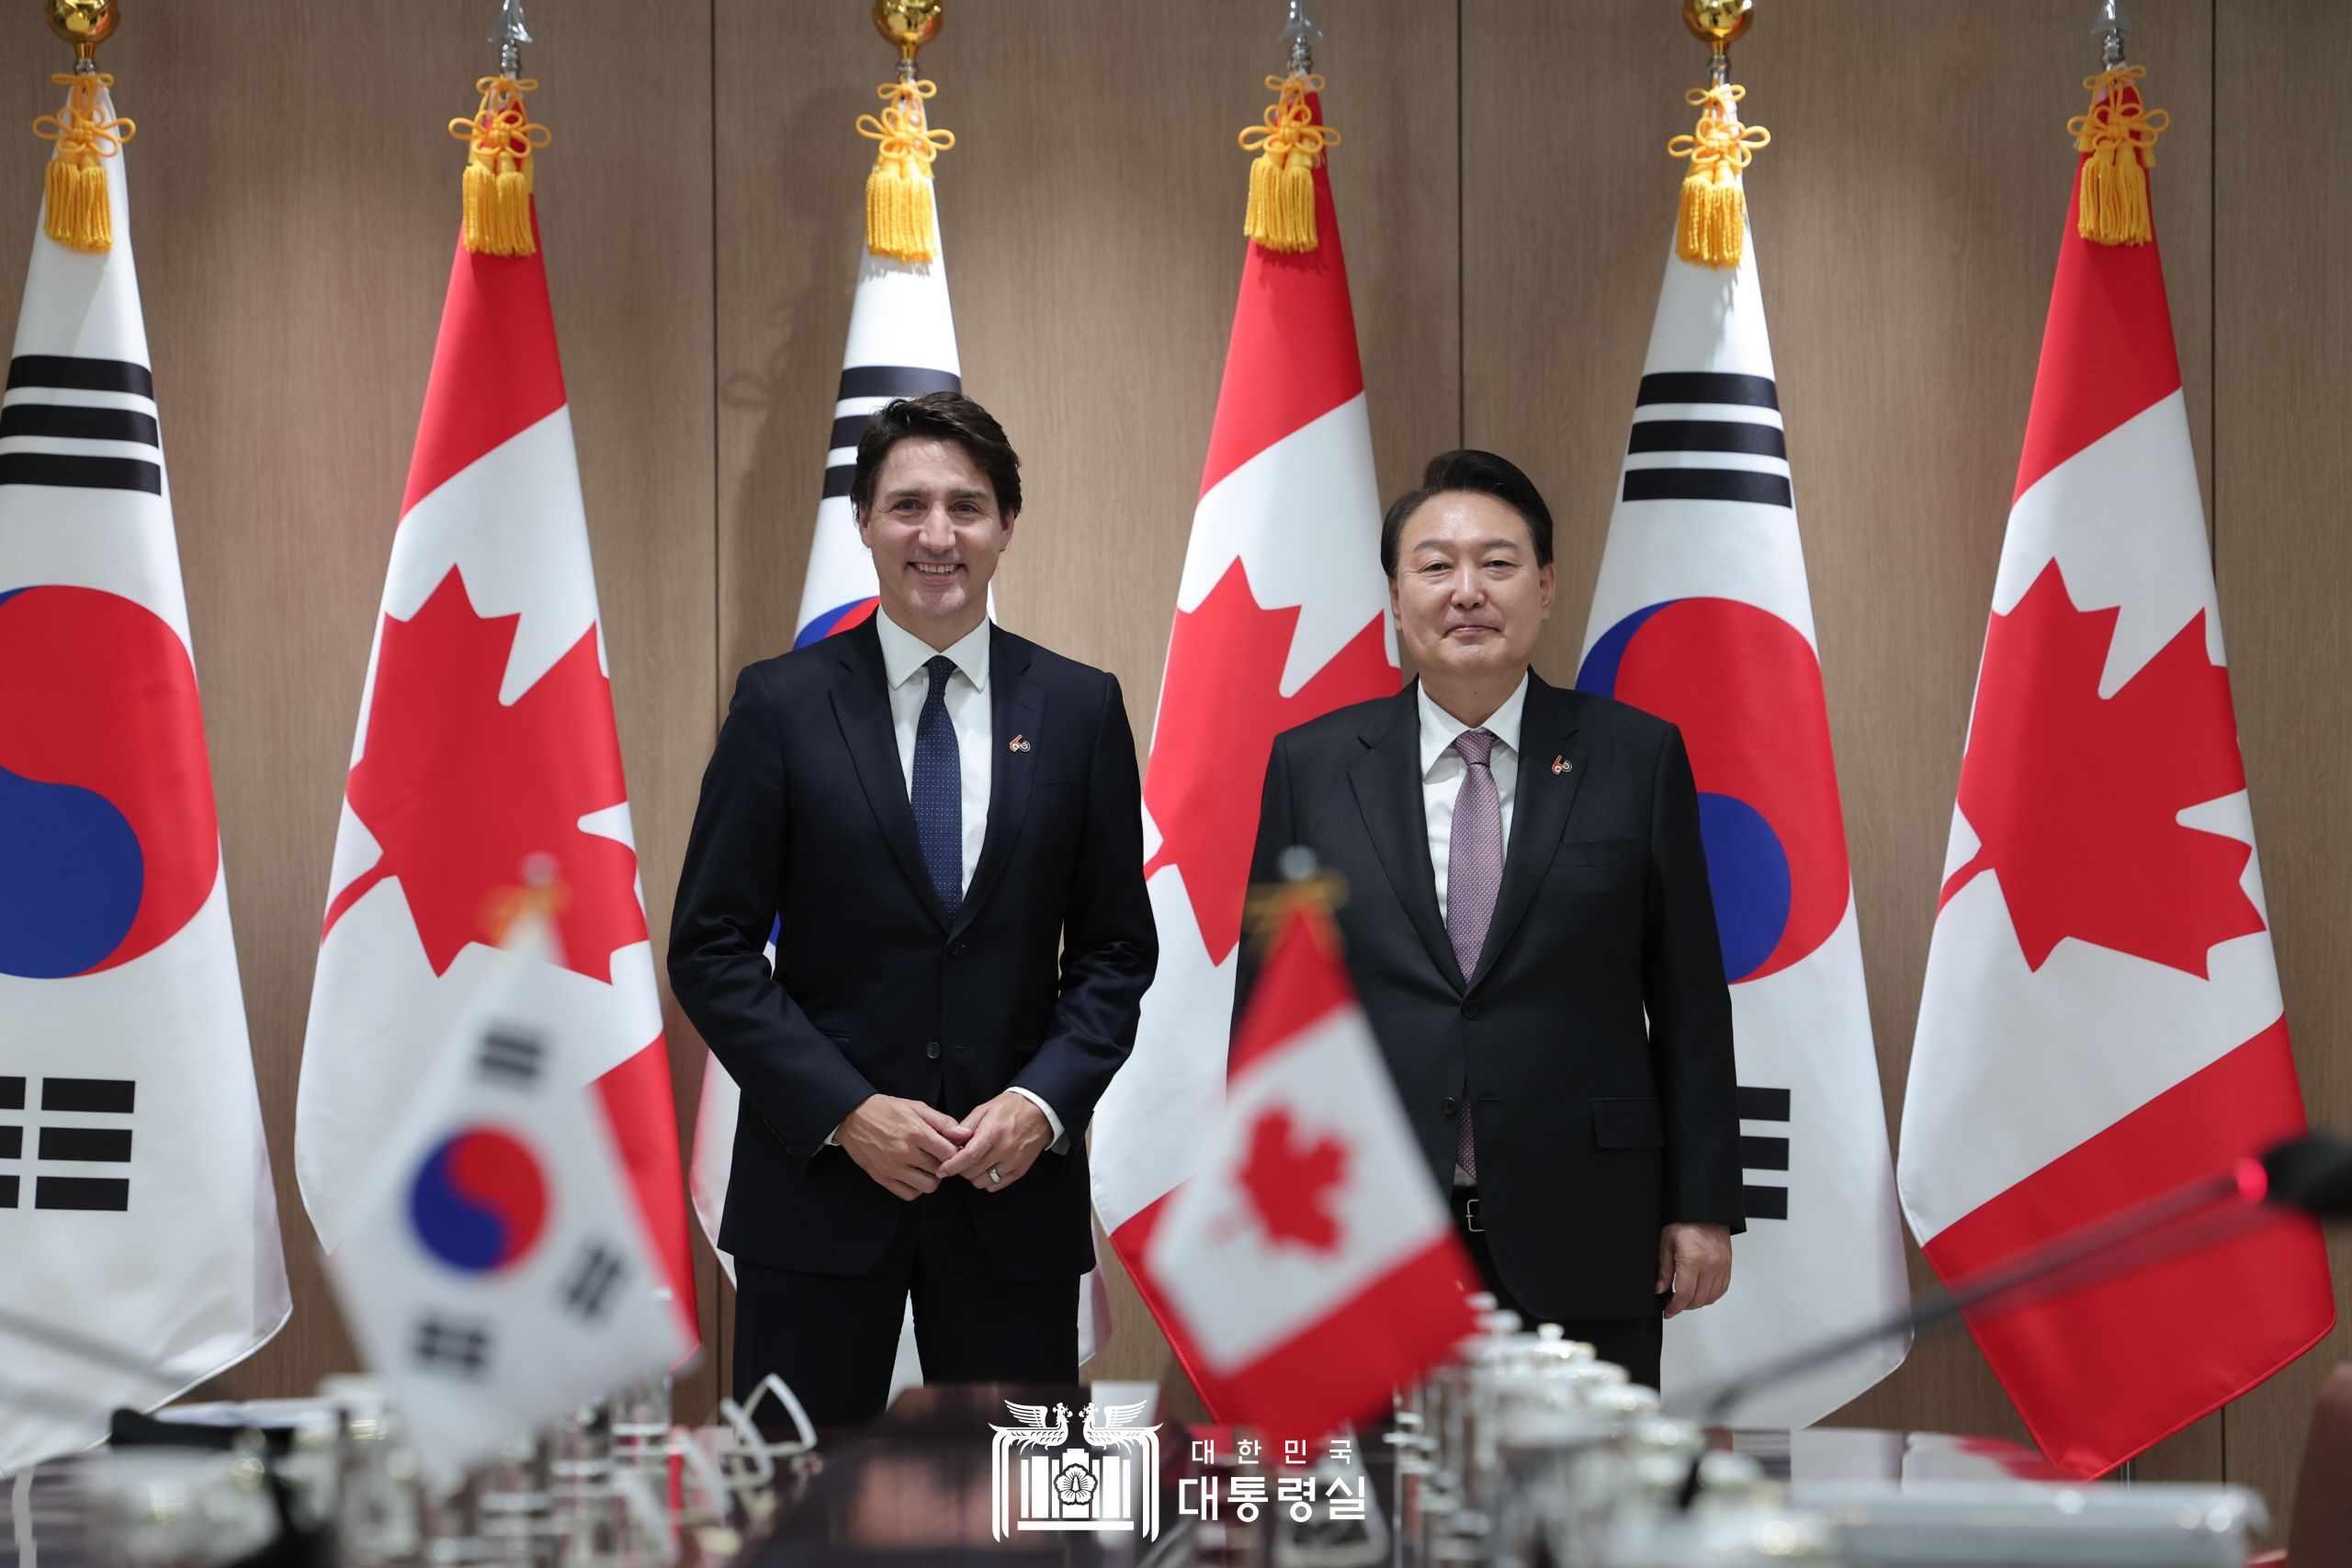 한-캐나다 정상회담(확대 회담)